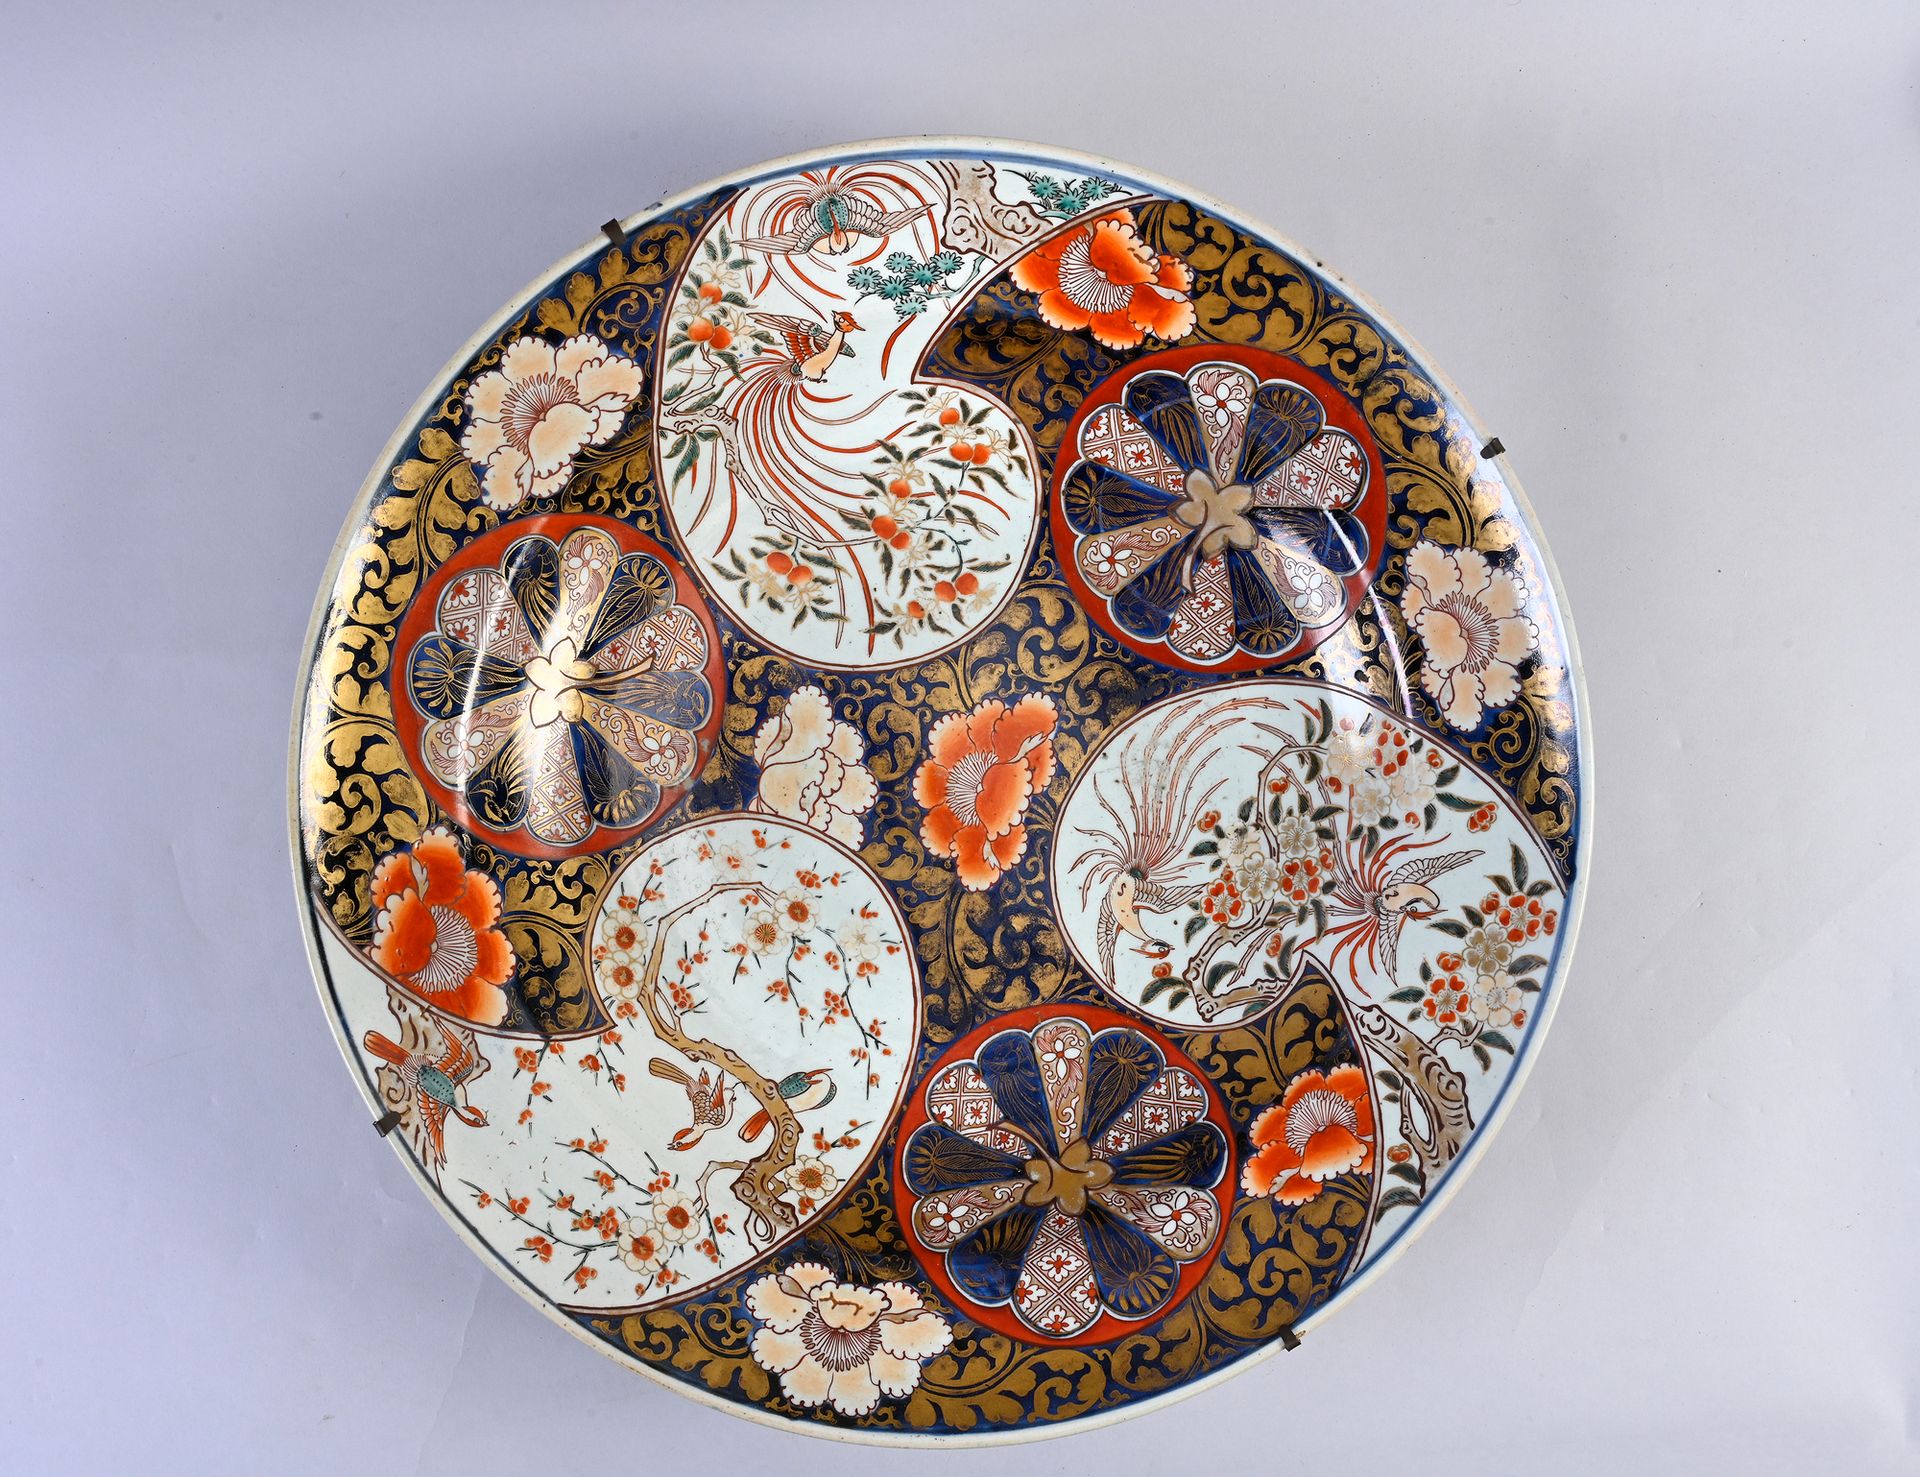 JAPON, XIXe siècle 大型伊万里瓷盘
装饰有花和鸟。
直径：55.5厘米